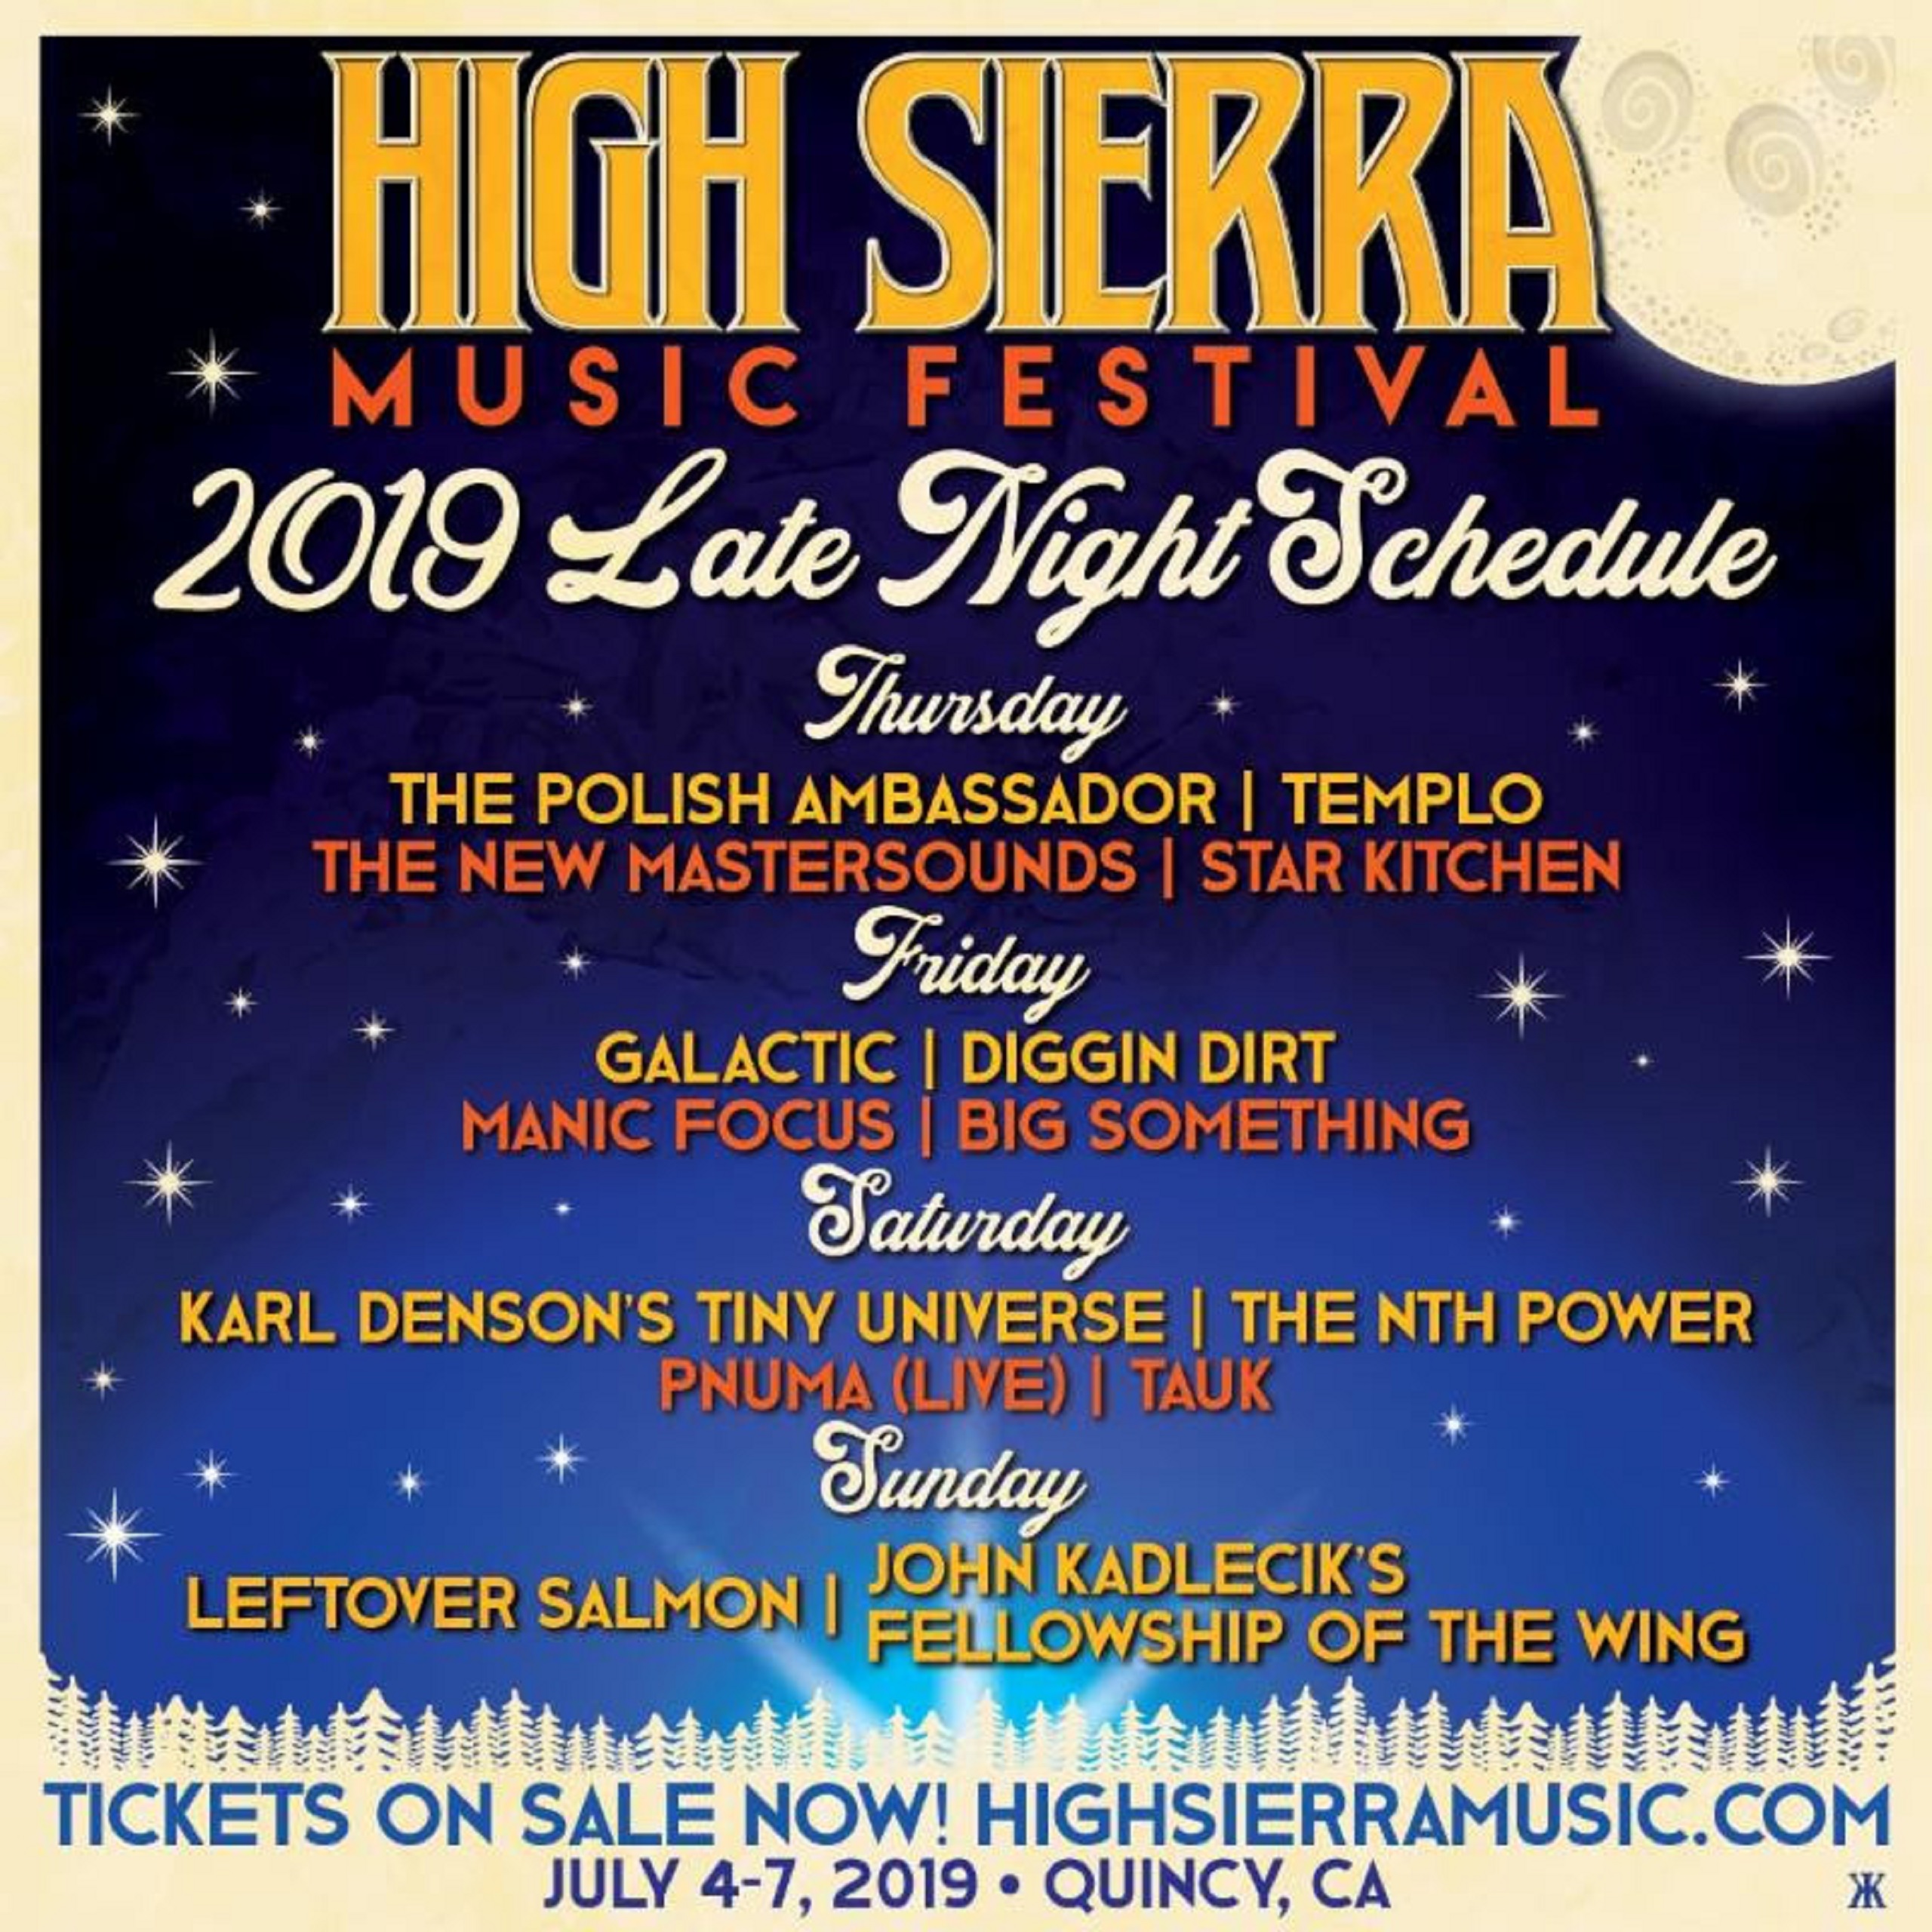 High Sierra Music Festival Announces 2019 Late Night Lineup